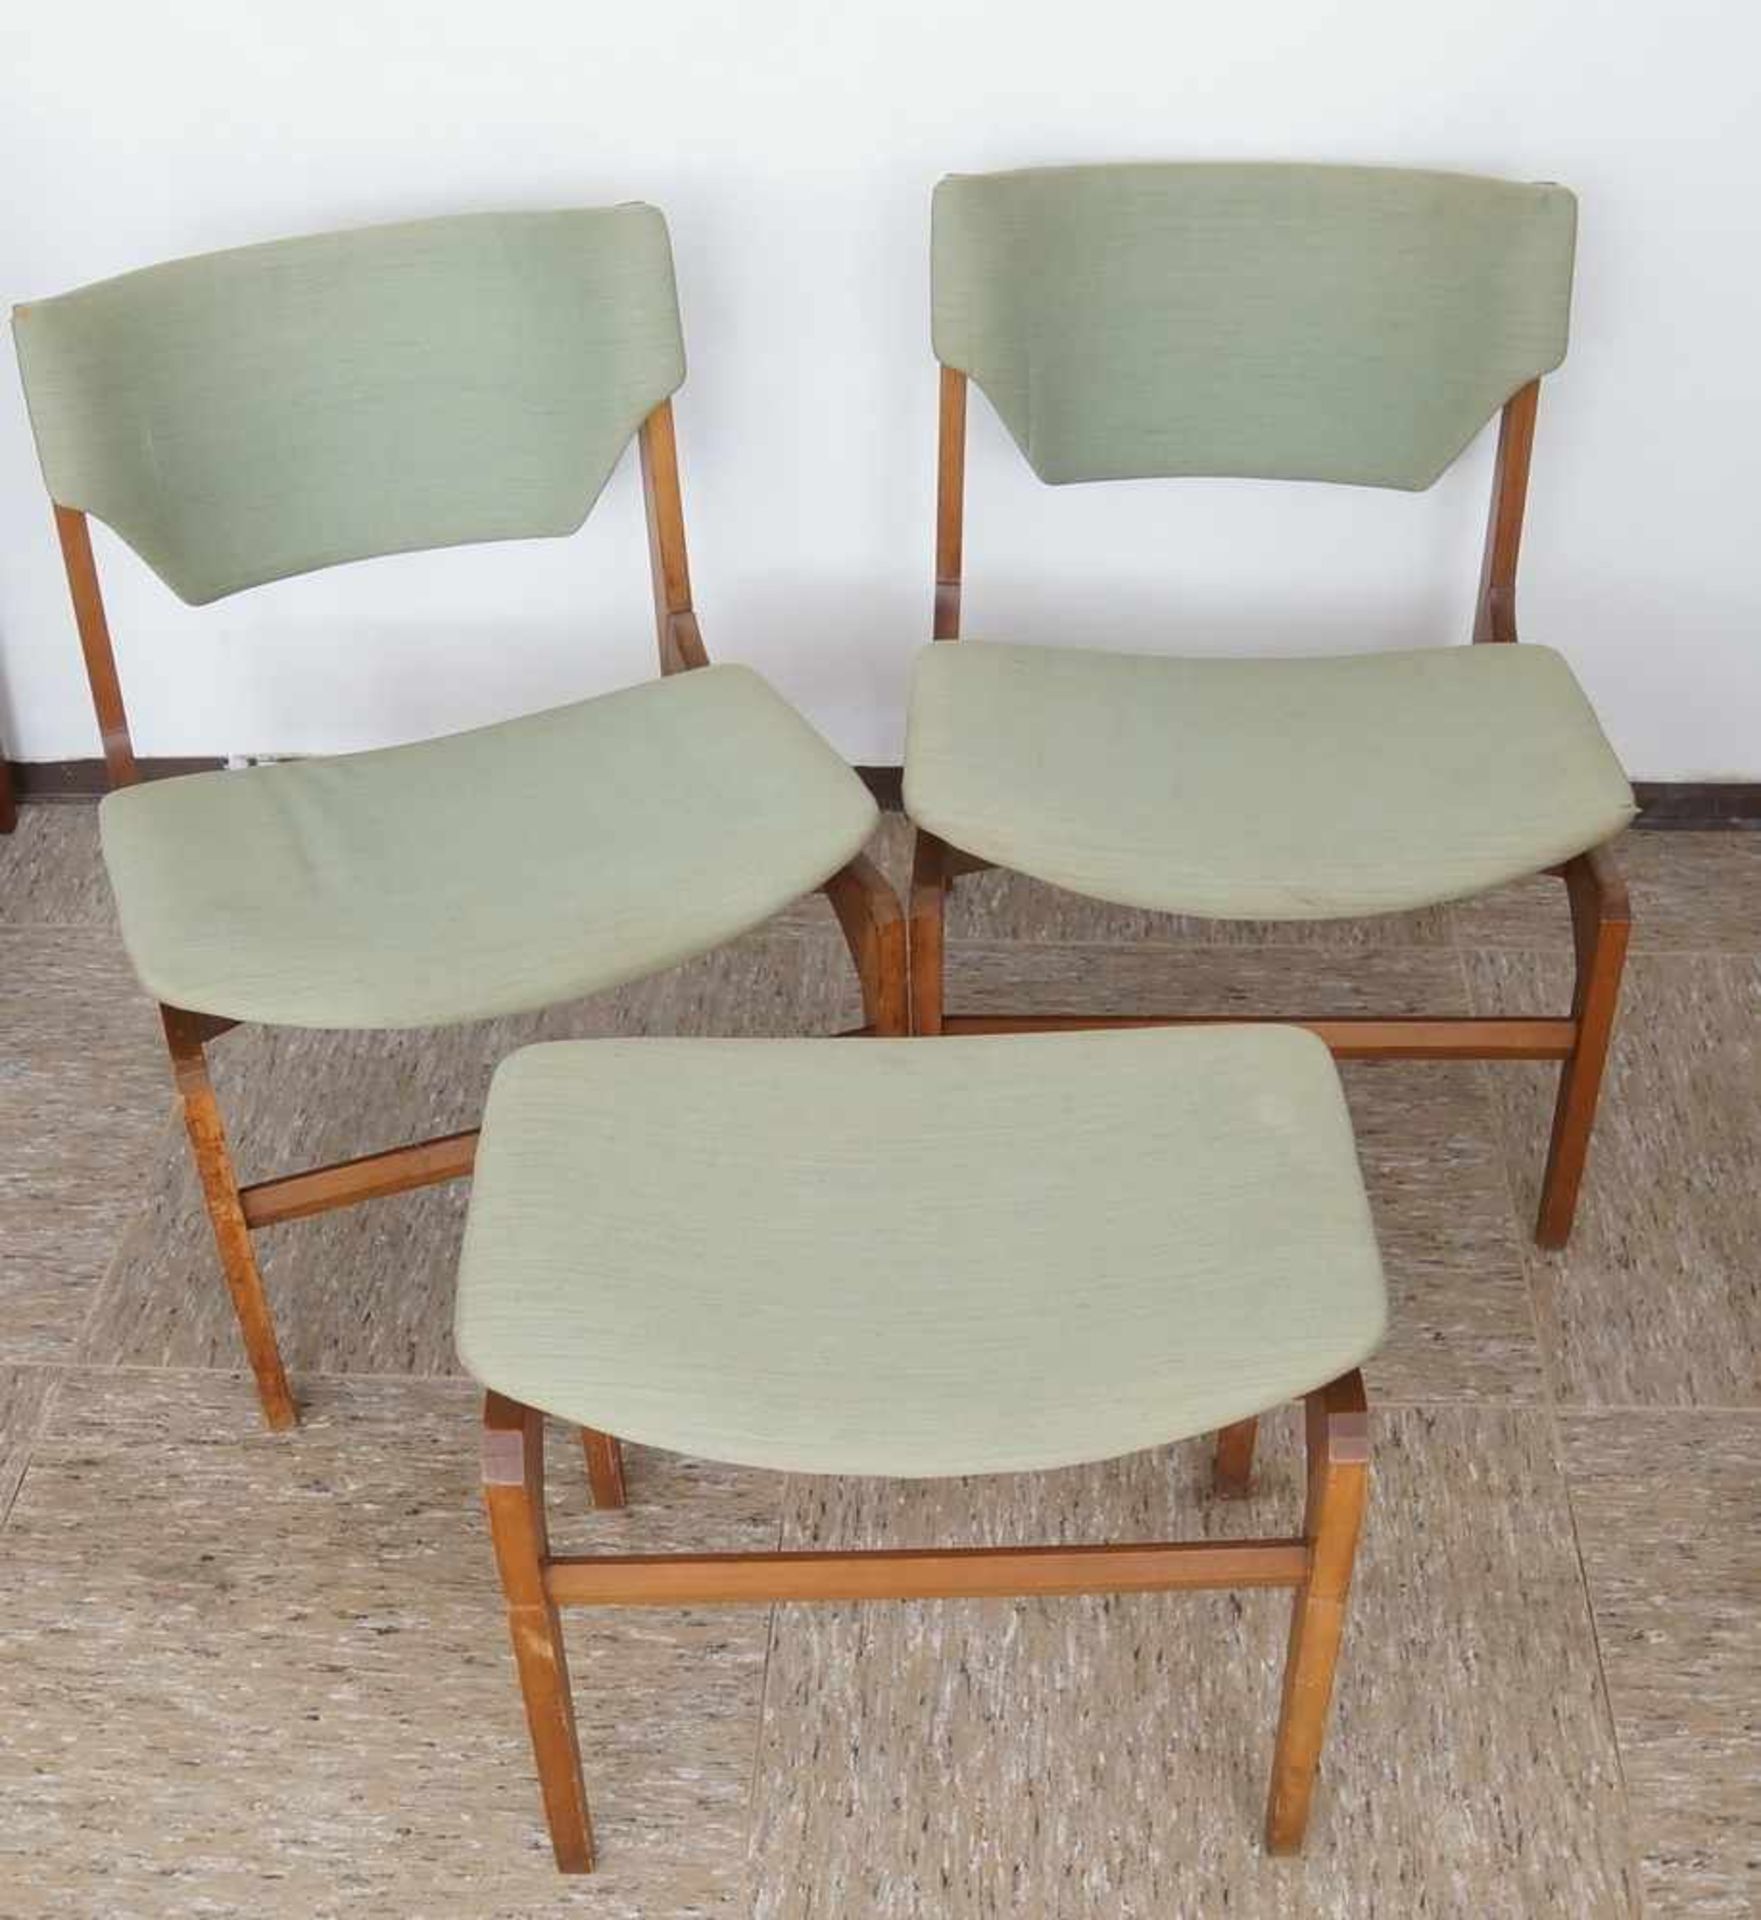 Zwei Stühle und ein Hocker, grüner Bezug, Gio Ponti zugesch. Italien, besch.,74x54x54xSH40 cm, - Bild 2 aus 6